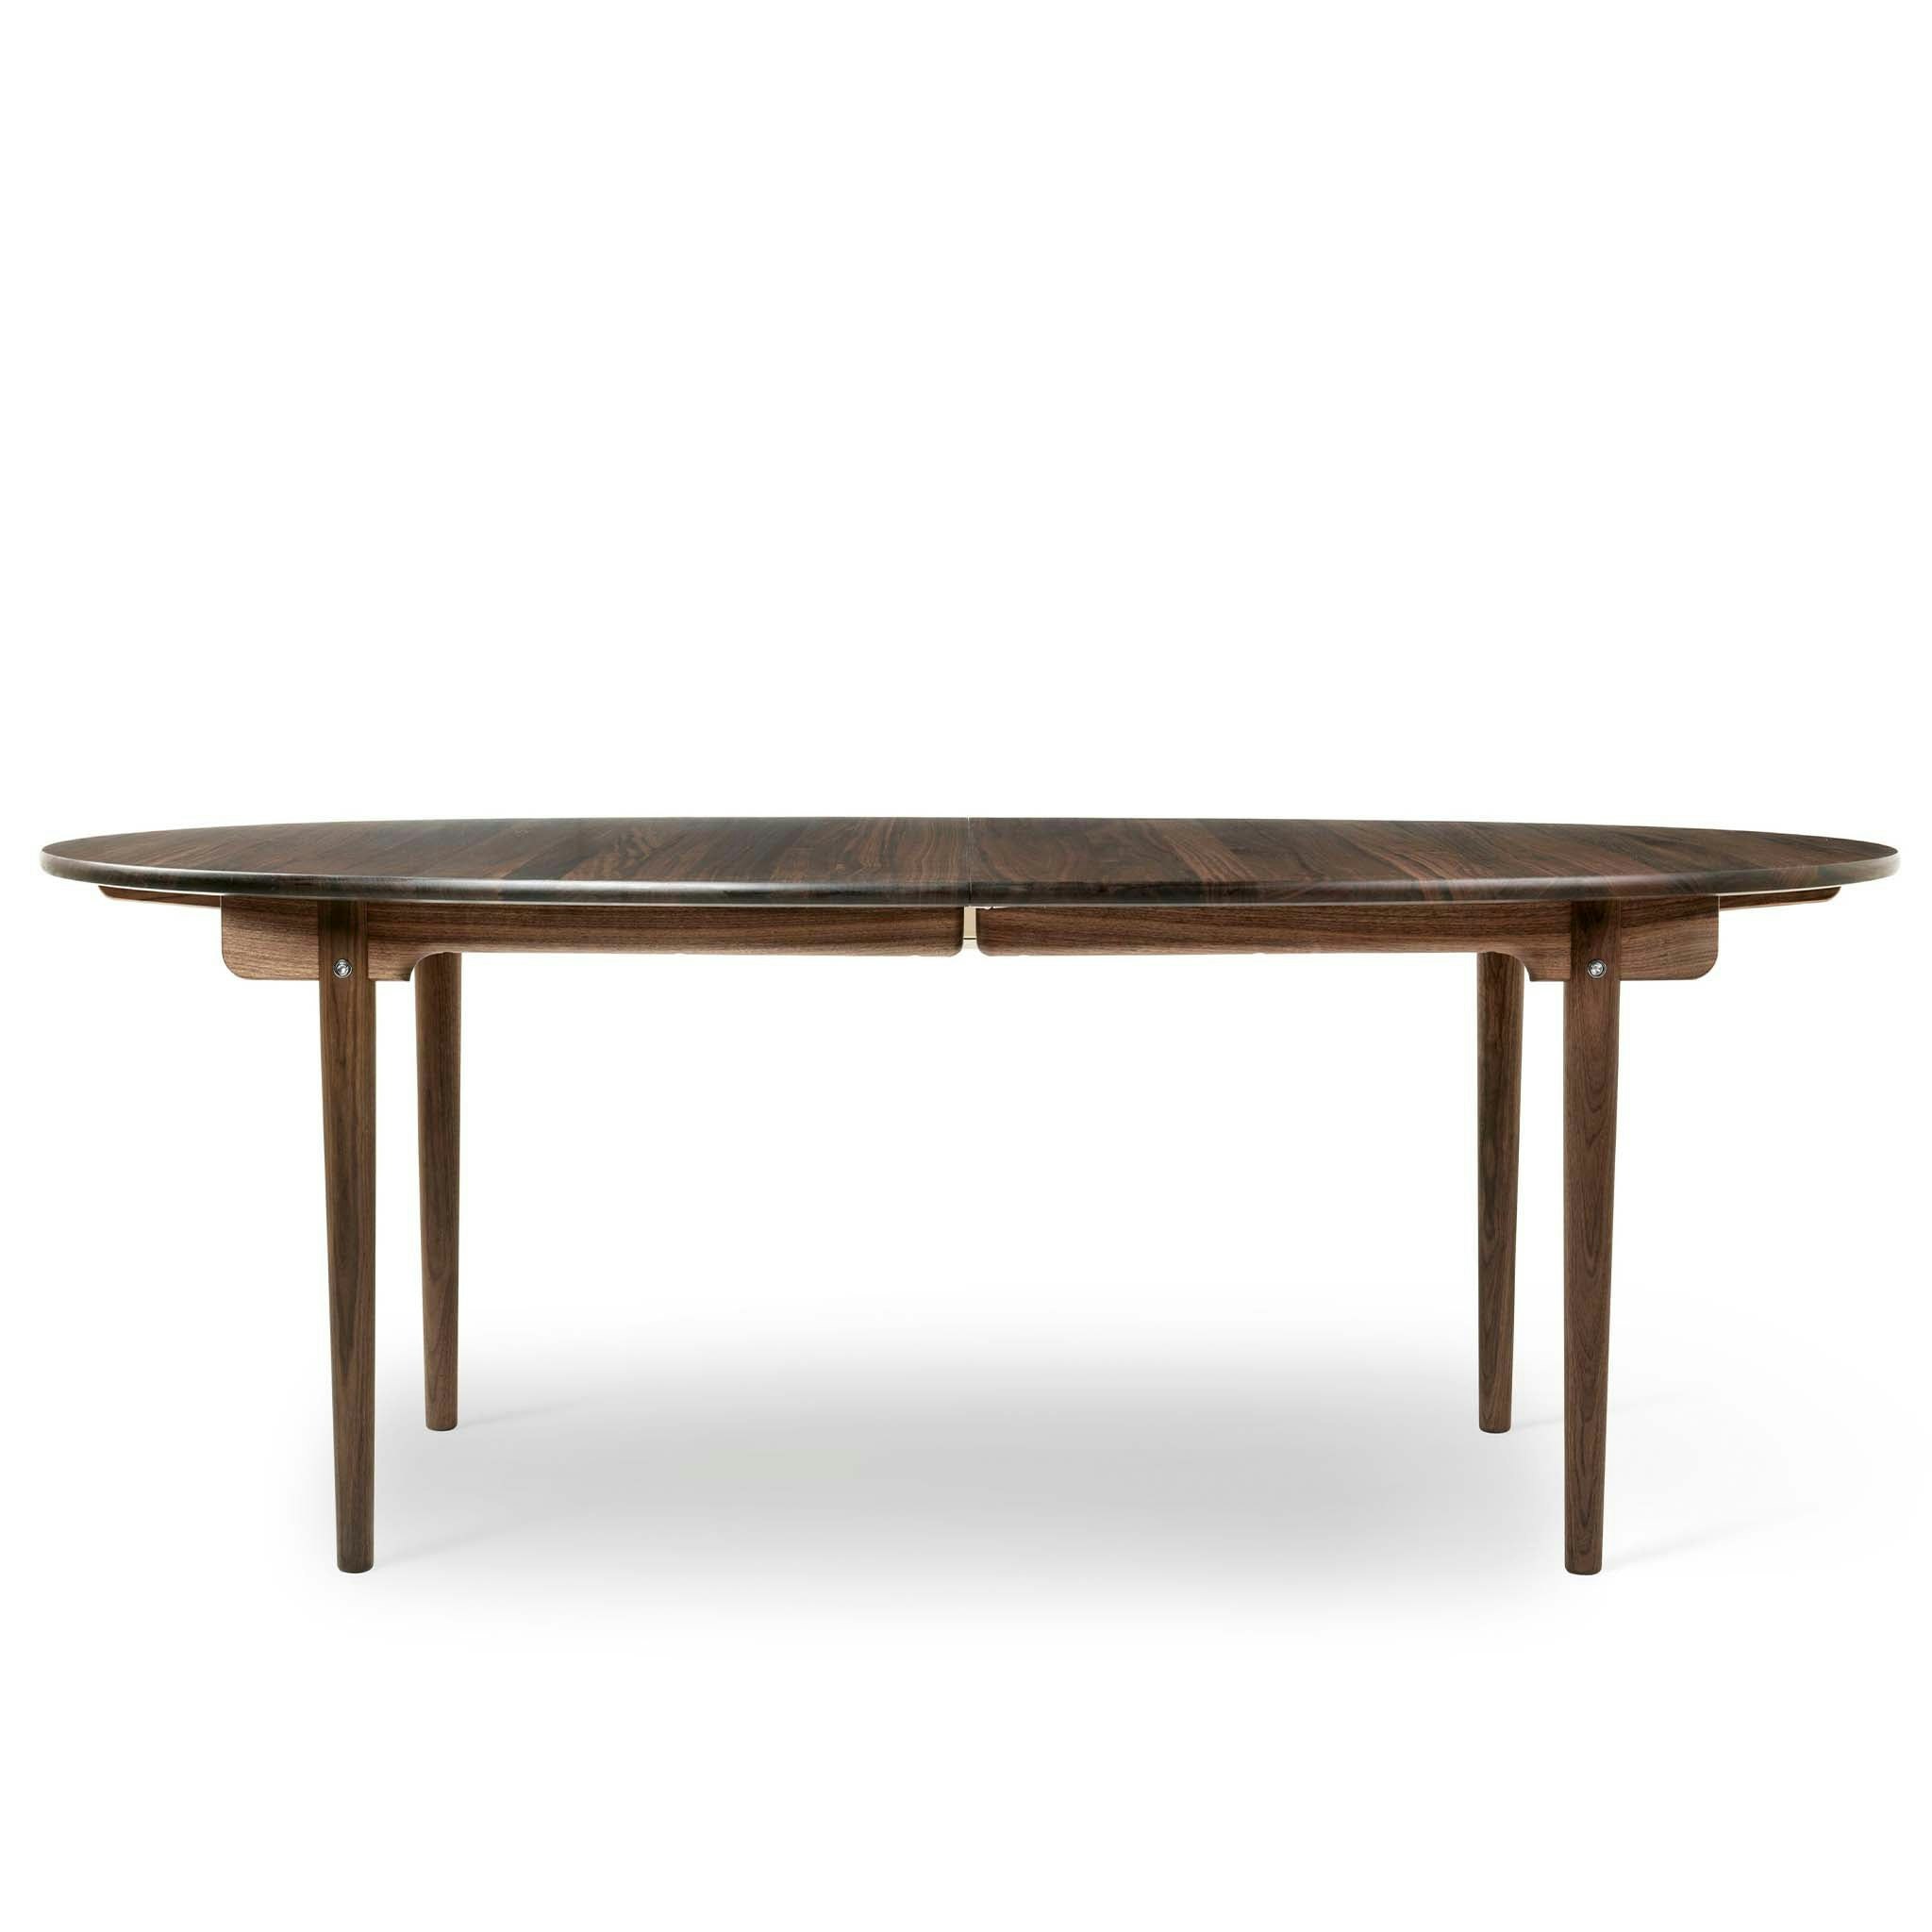 CH338 Table by Carl Hansen & Søn